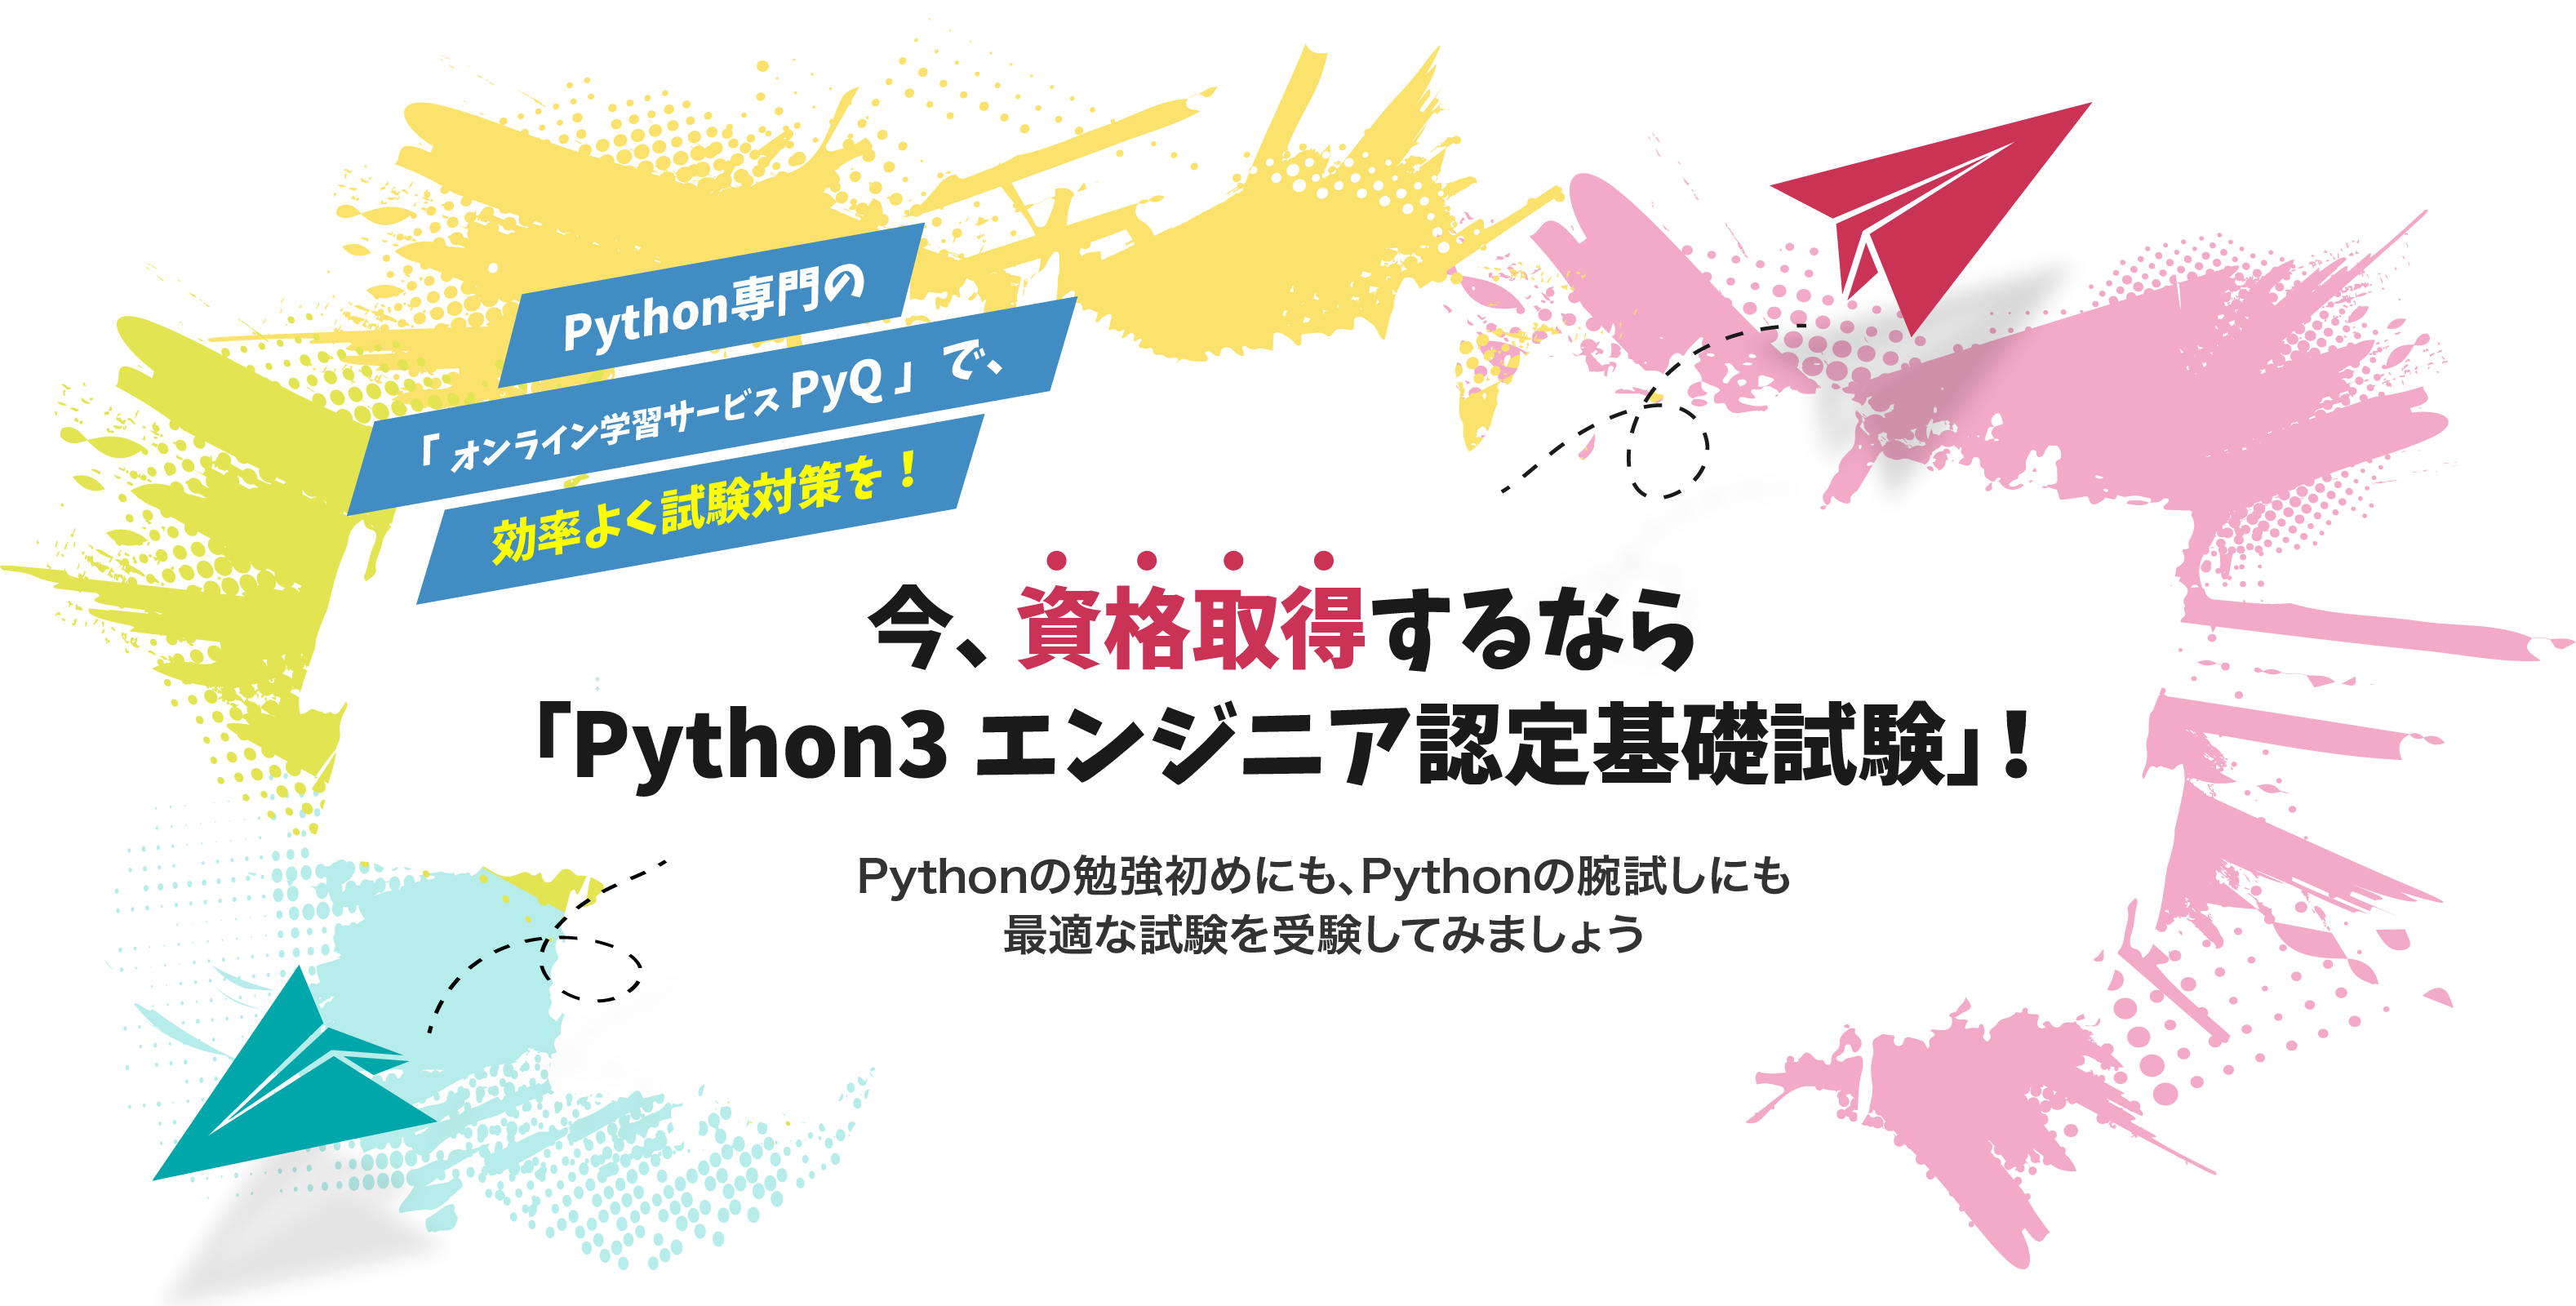 Python専門のオンライン学習サービスPyQ（パイキュー）で、効率よく試験対策を。今、資格取得するならPython3エンジニア認定基礎試験。Python勉強の入門にも、腕試しにも最適な試験を受験してみましょう